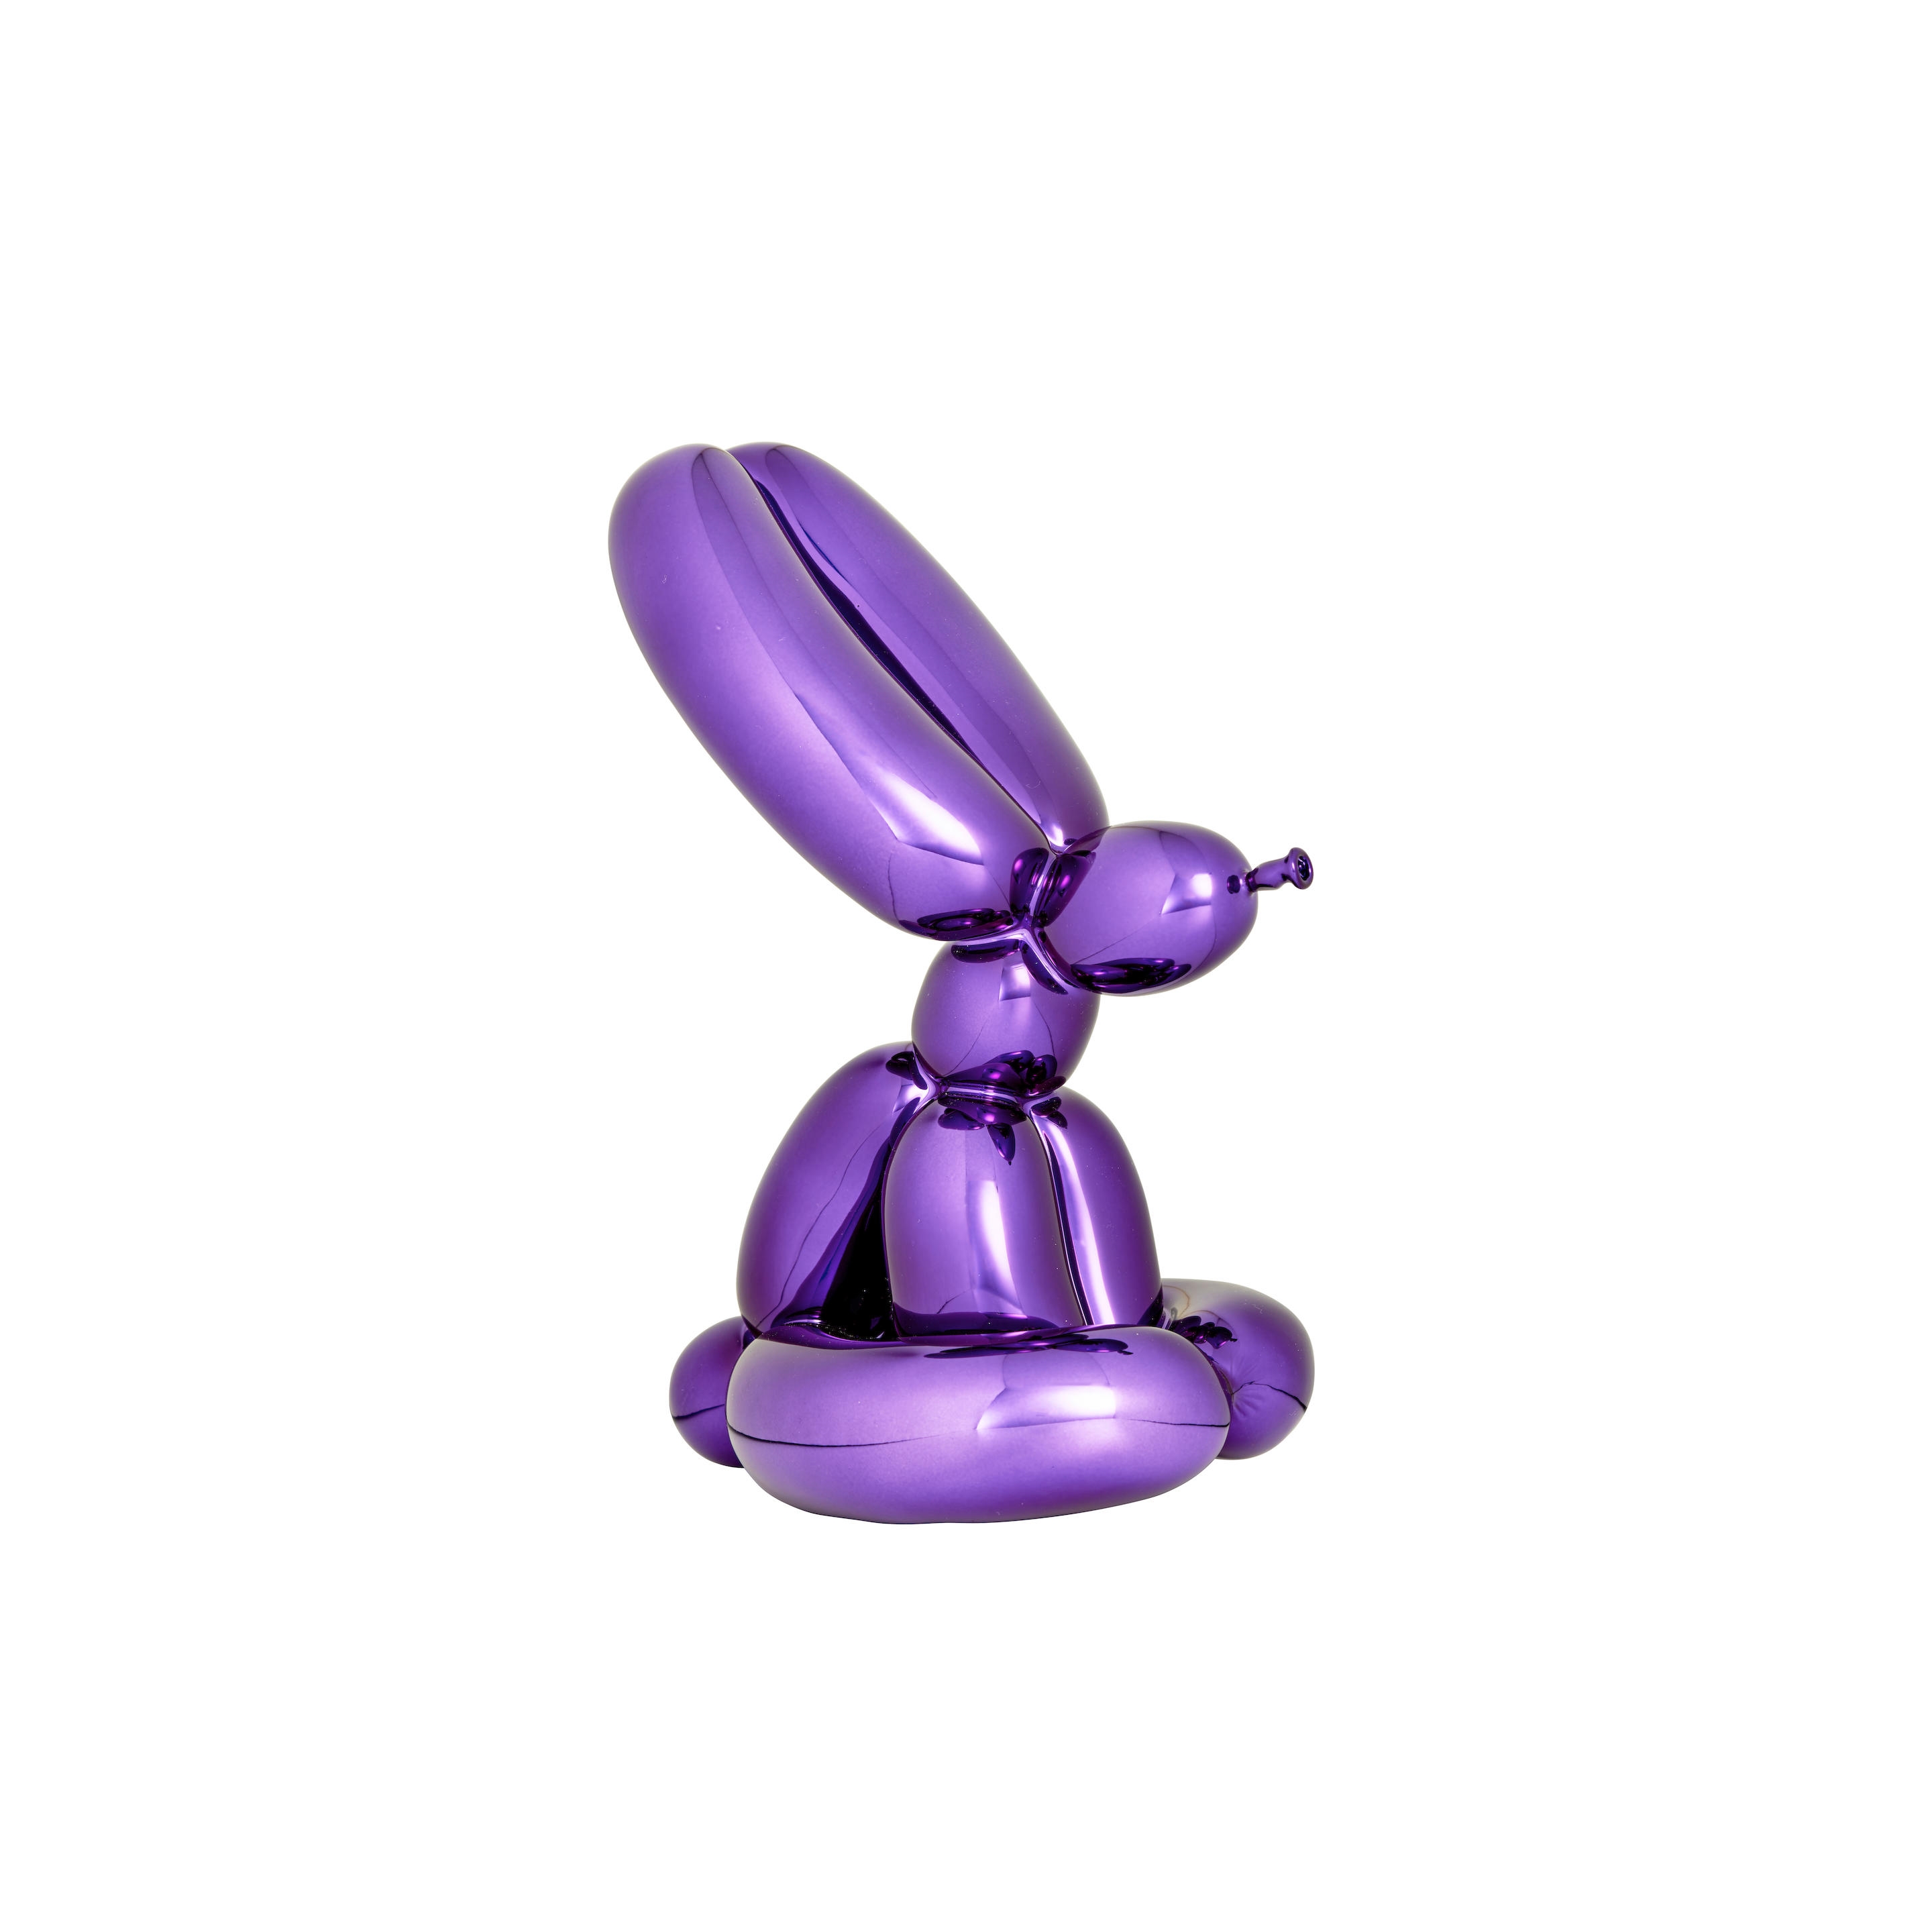 Jeff Koons - Artwork: Balloon Rabbit